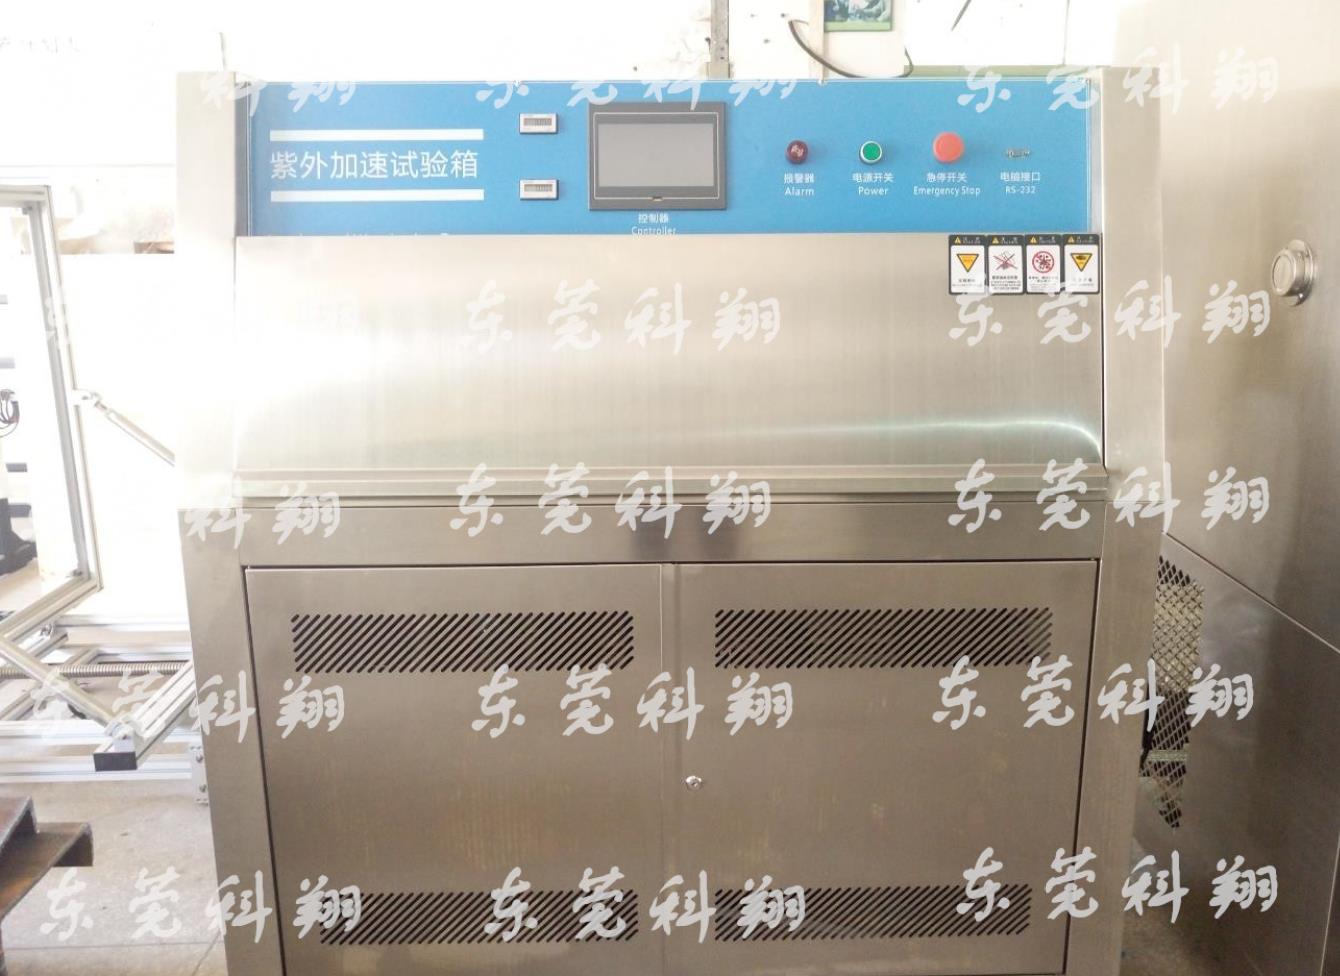 TSG07-2019特种设备生产和充装单位许可规则 电梯生产单位许可条件